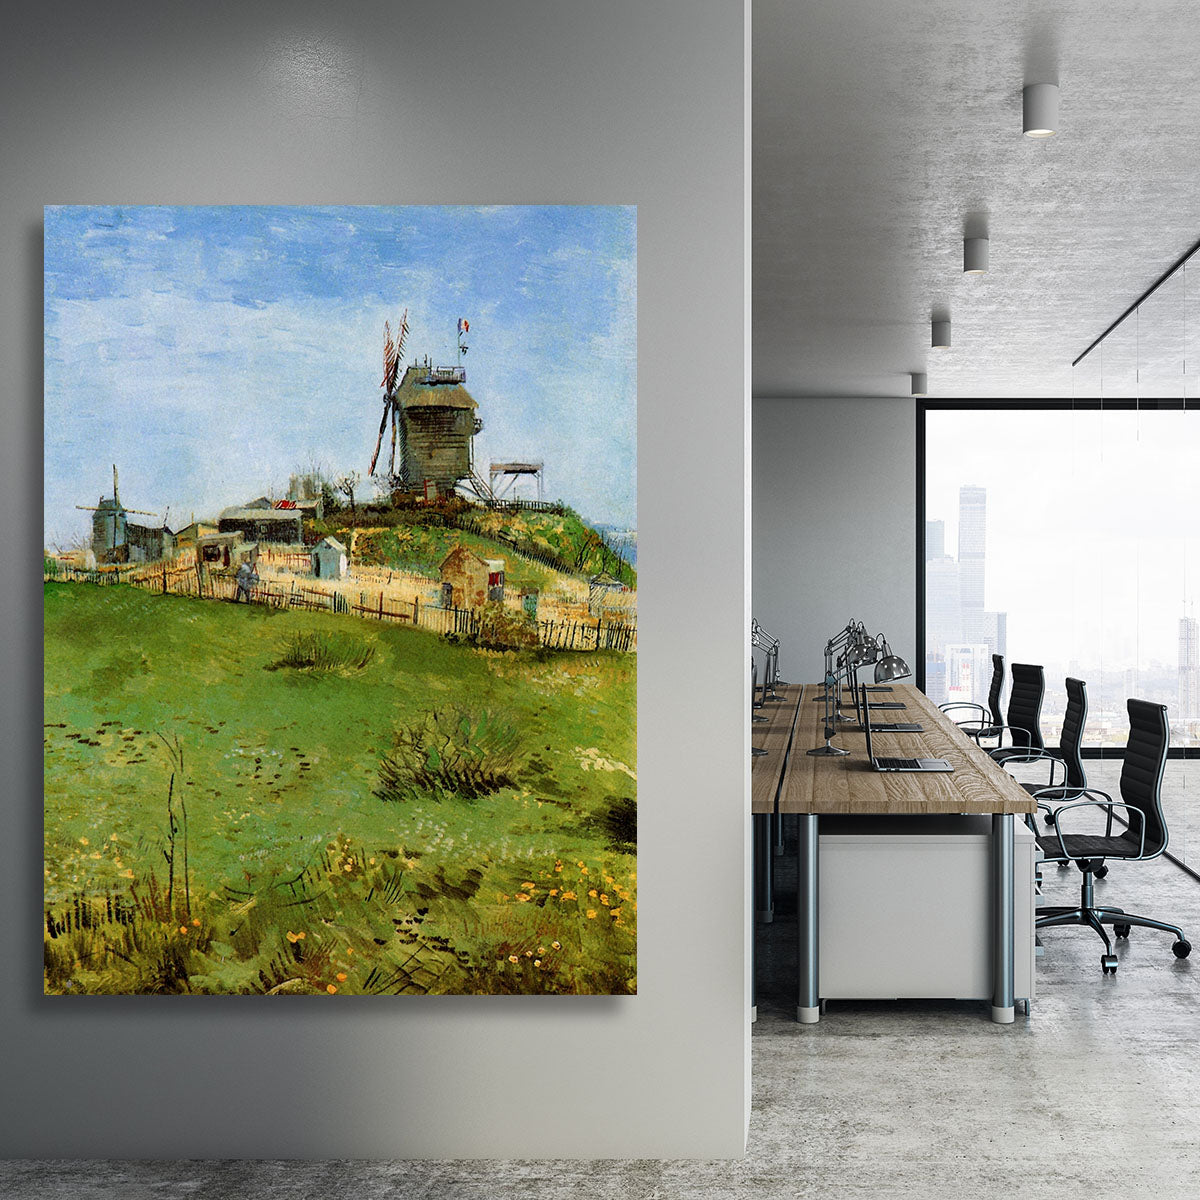 Le Moulin de la Galette 4 by Van Gogh Canvas Print or Poster - Canvas Art Rocks - 3